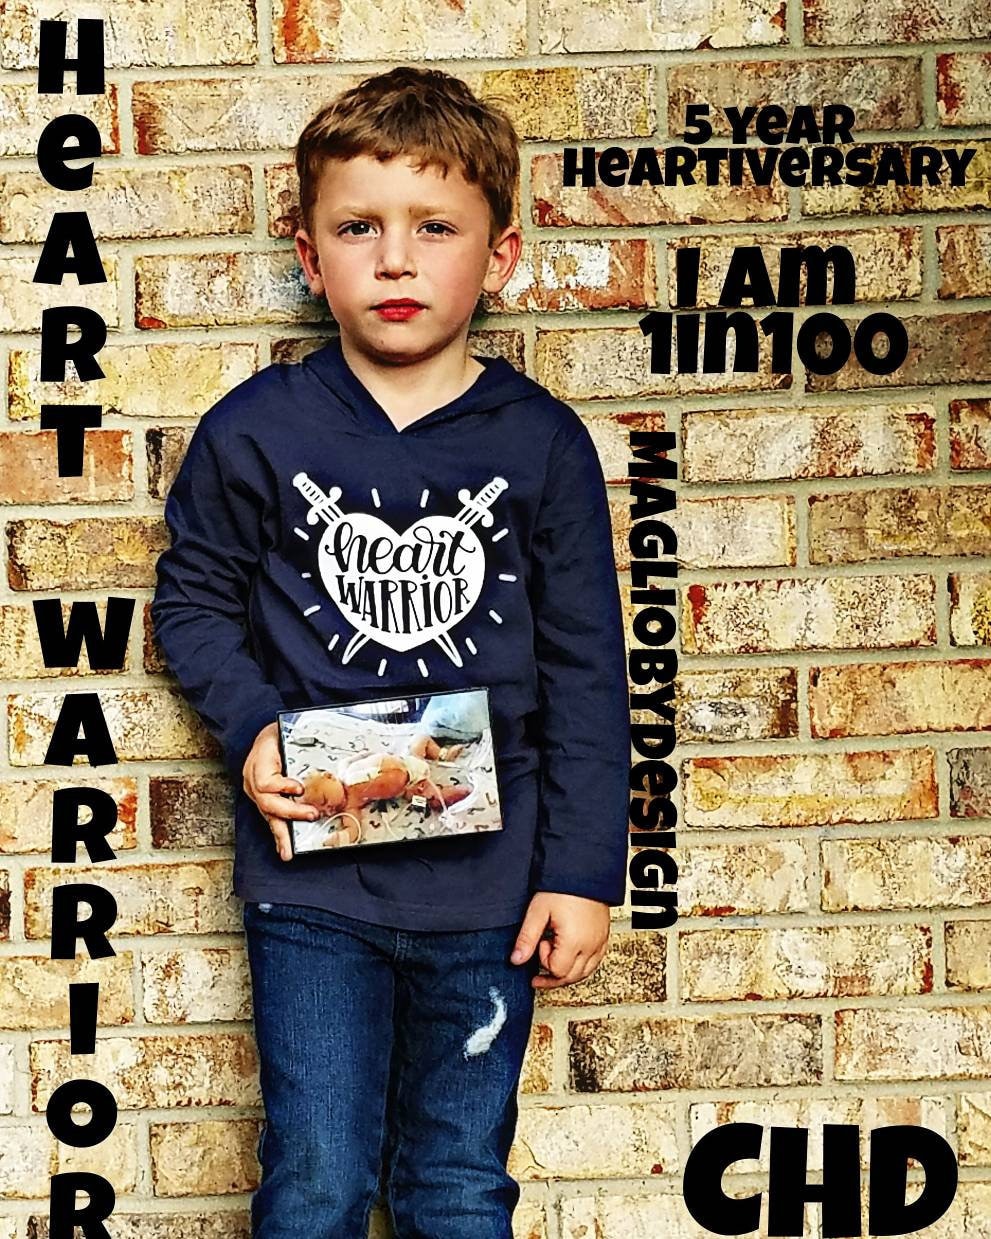 Heart warrior tshirt | CHD awareness | CHD awareness shirt | hand drawn design | heart warrior